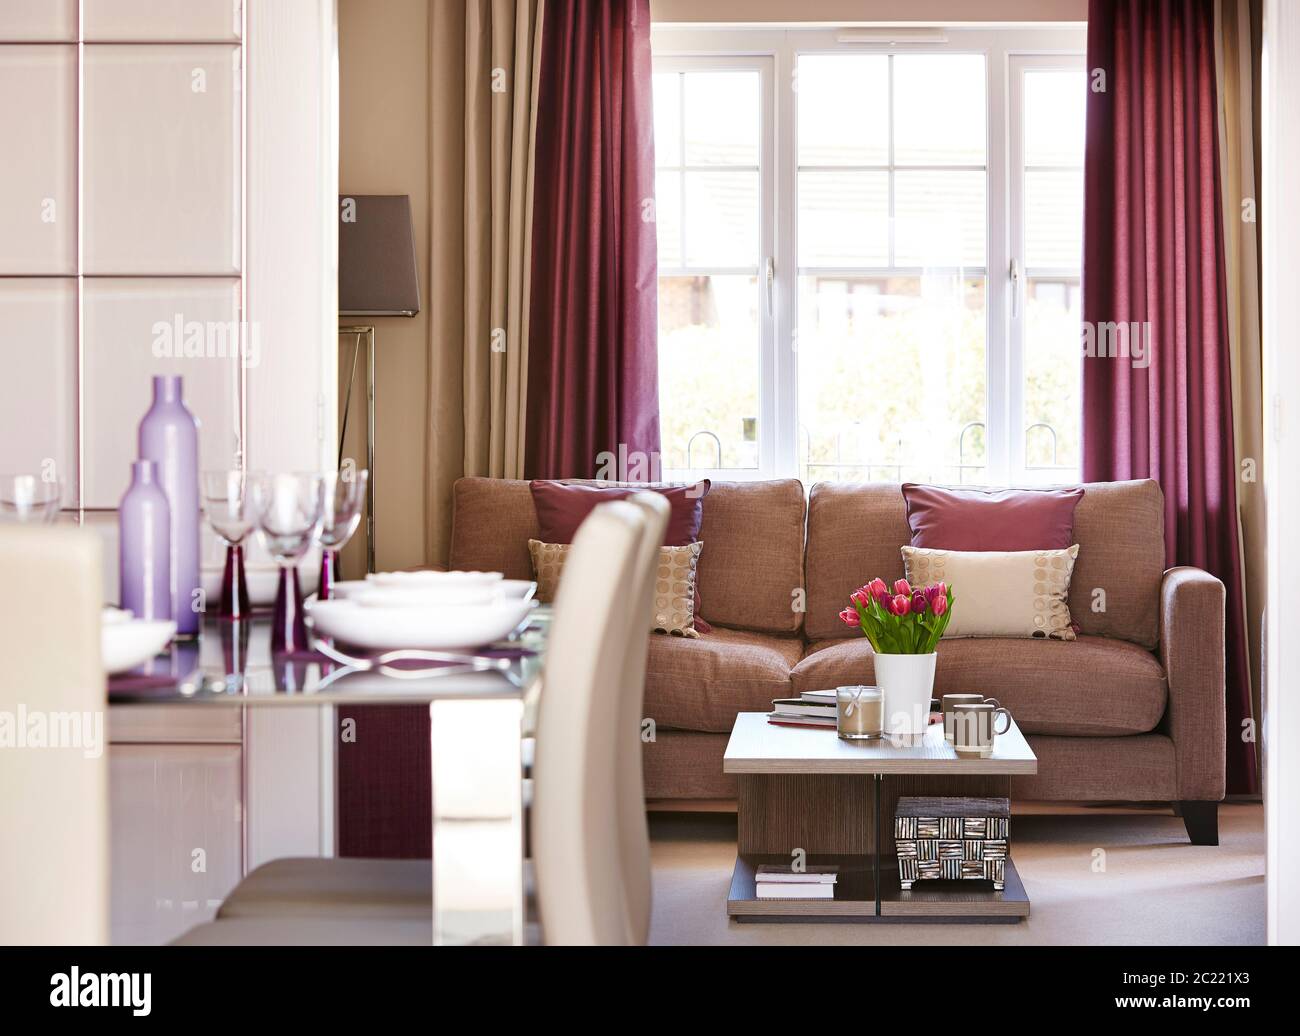 Immagine di un moderno soggiorno interno con tavolo da pranzo davanti e divano sullo sfondo Foto Stock